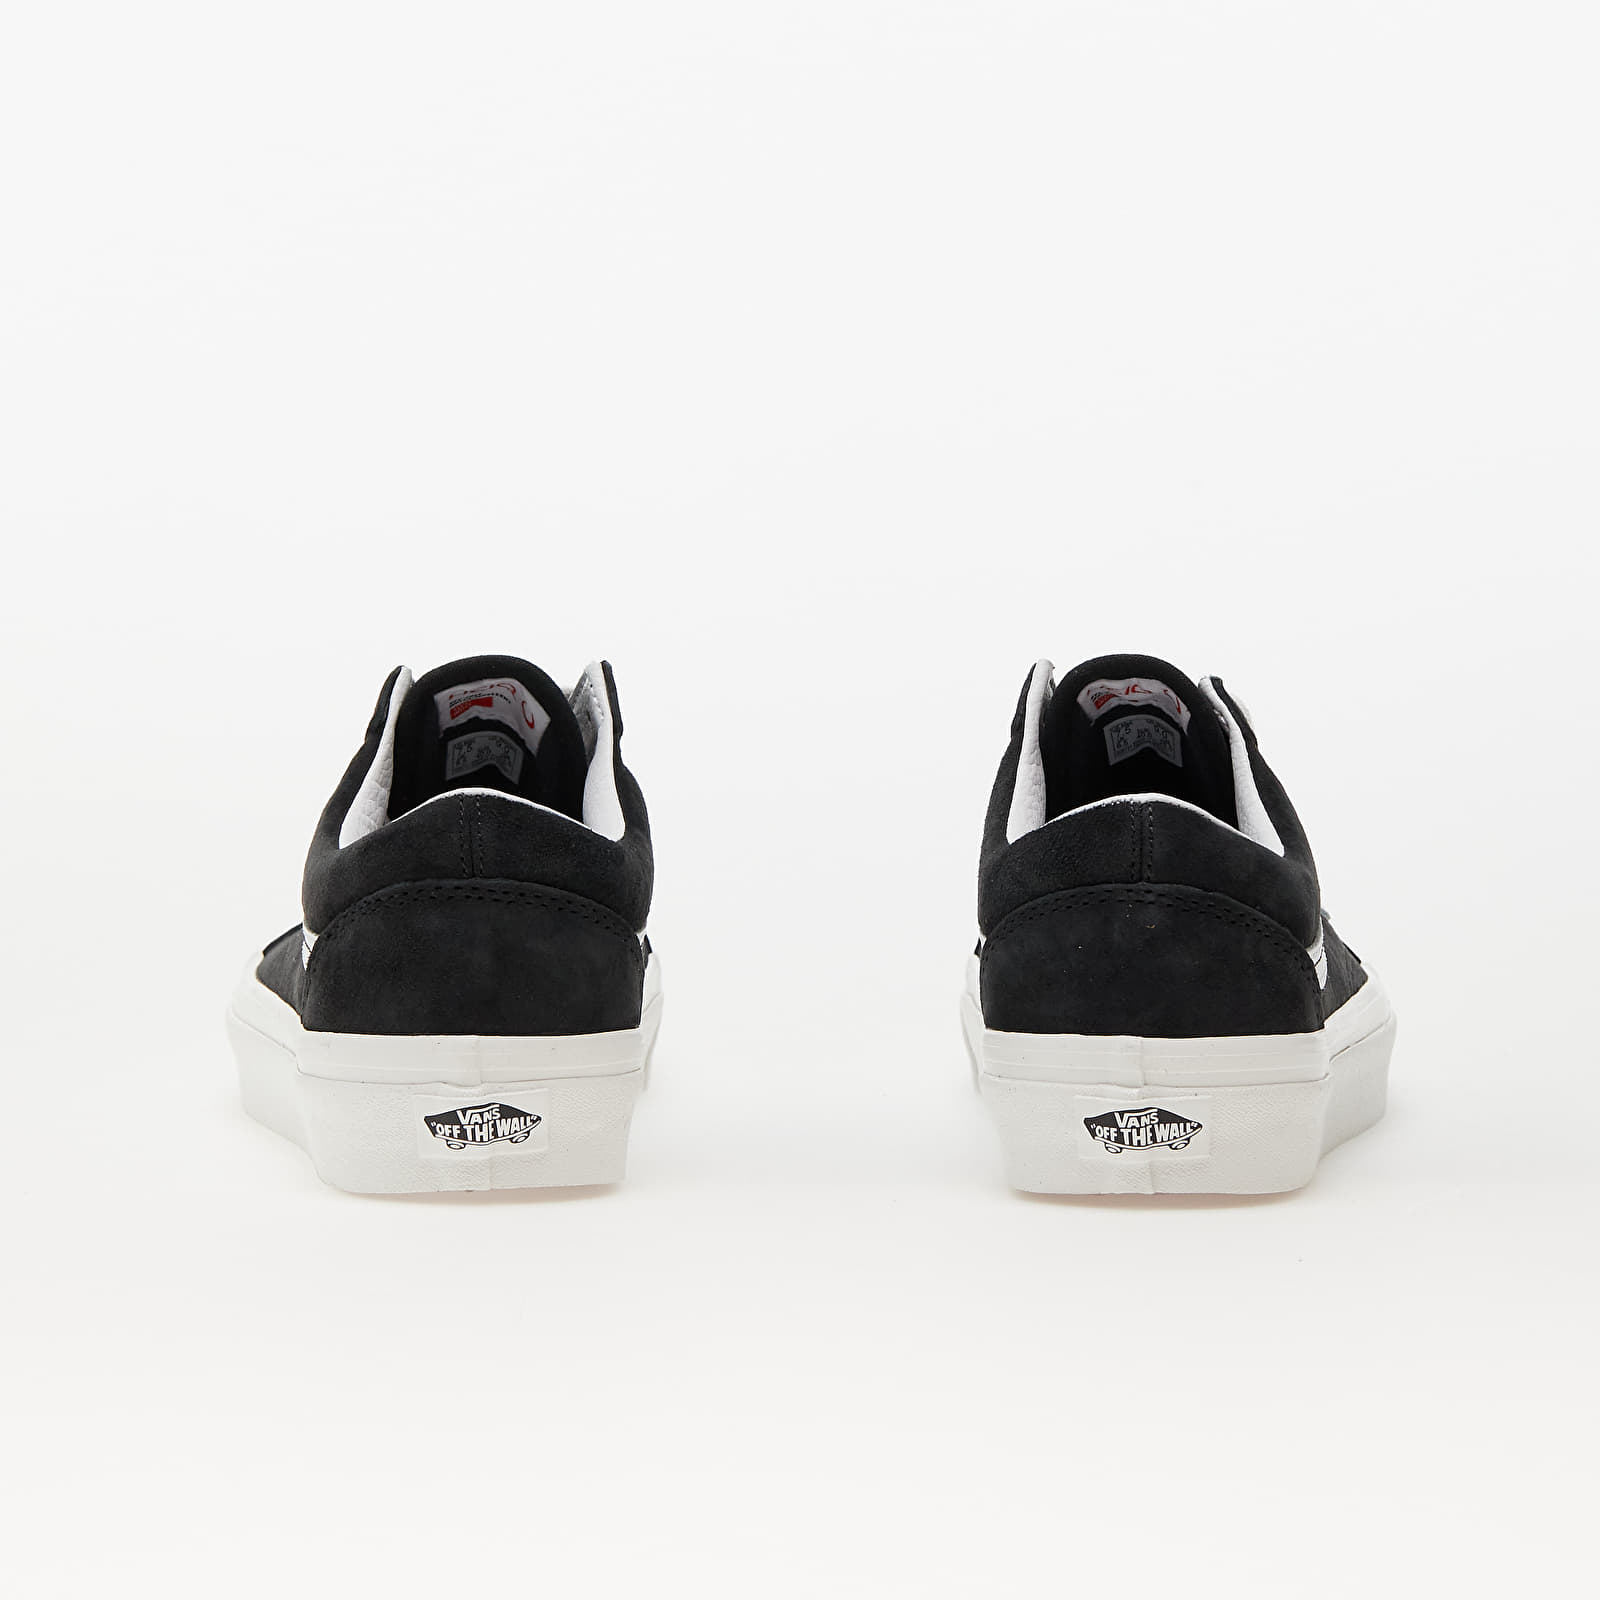 Men's shoes Vans Old Skool 36 DX Pig Suede Caviar | Queens